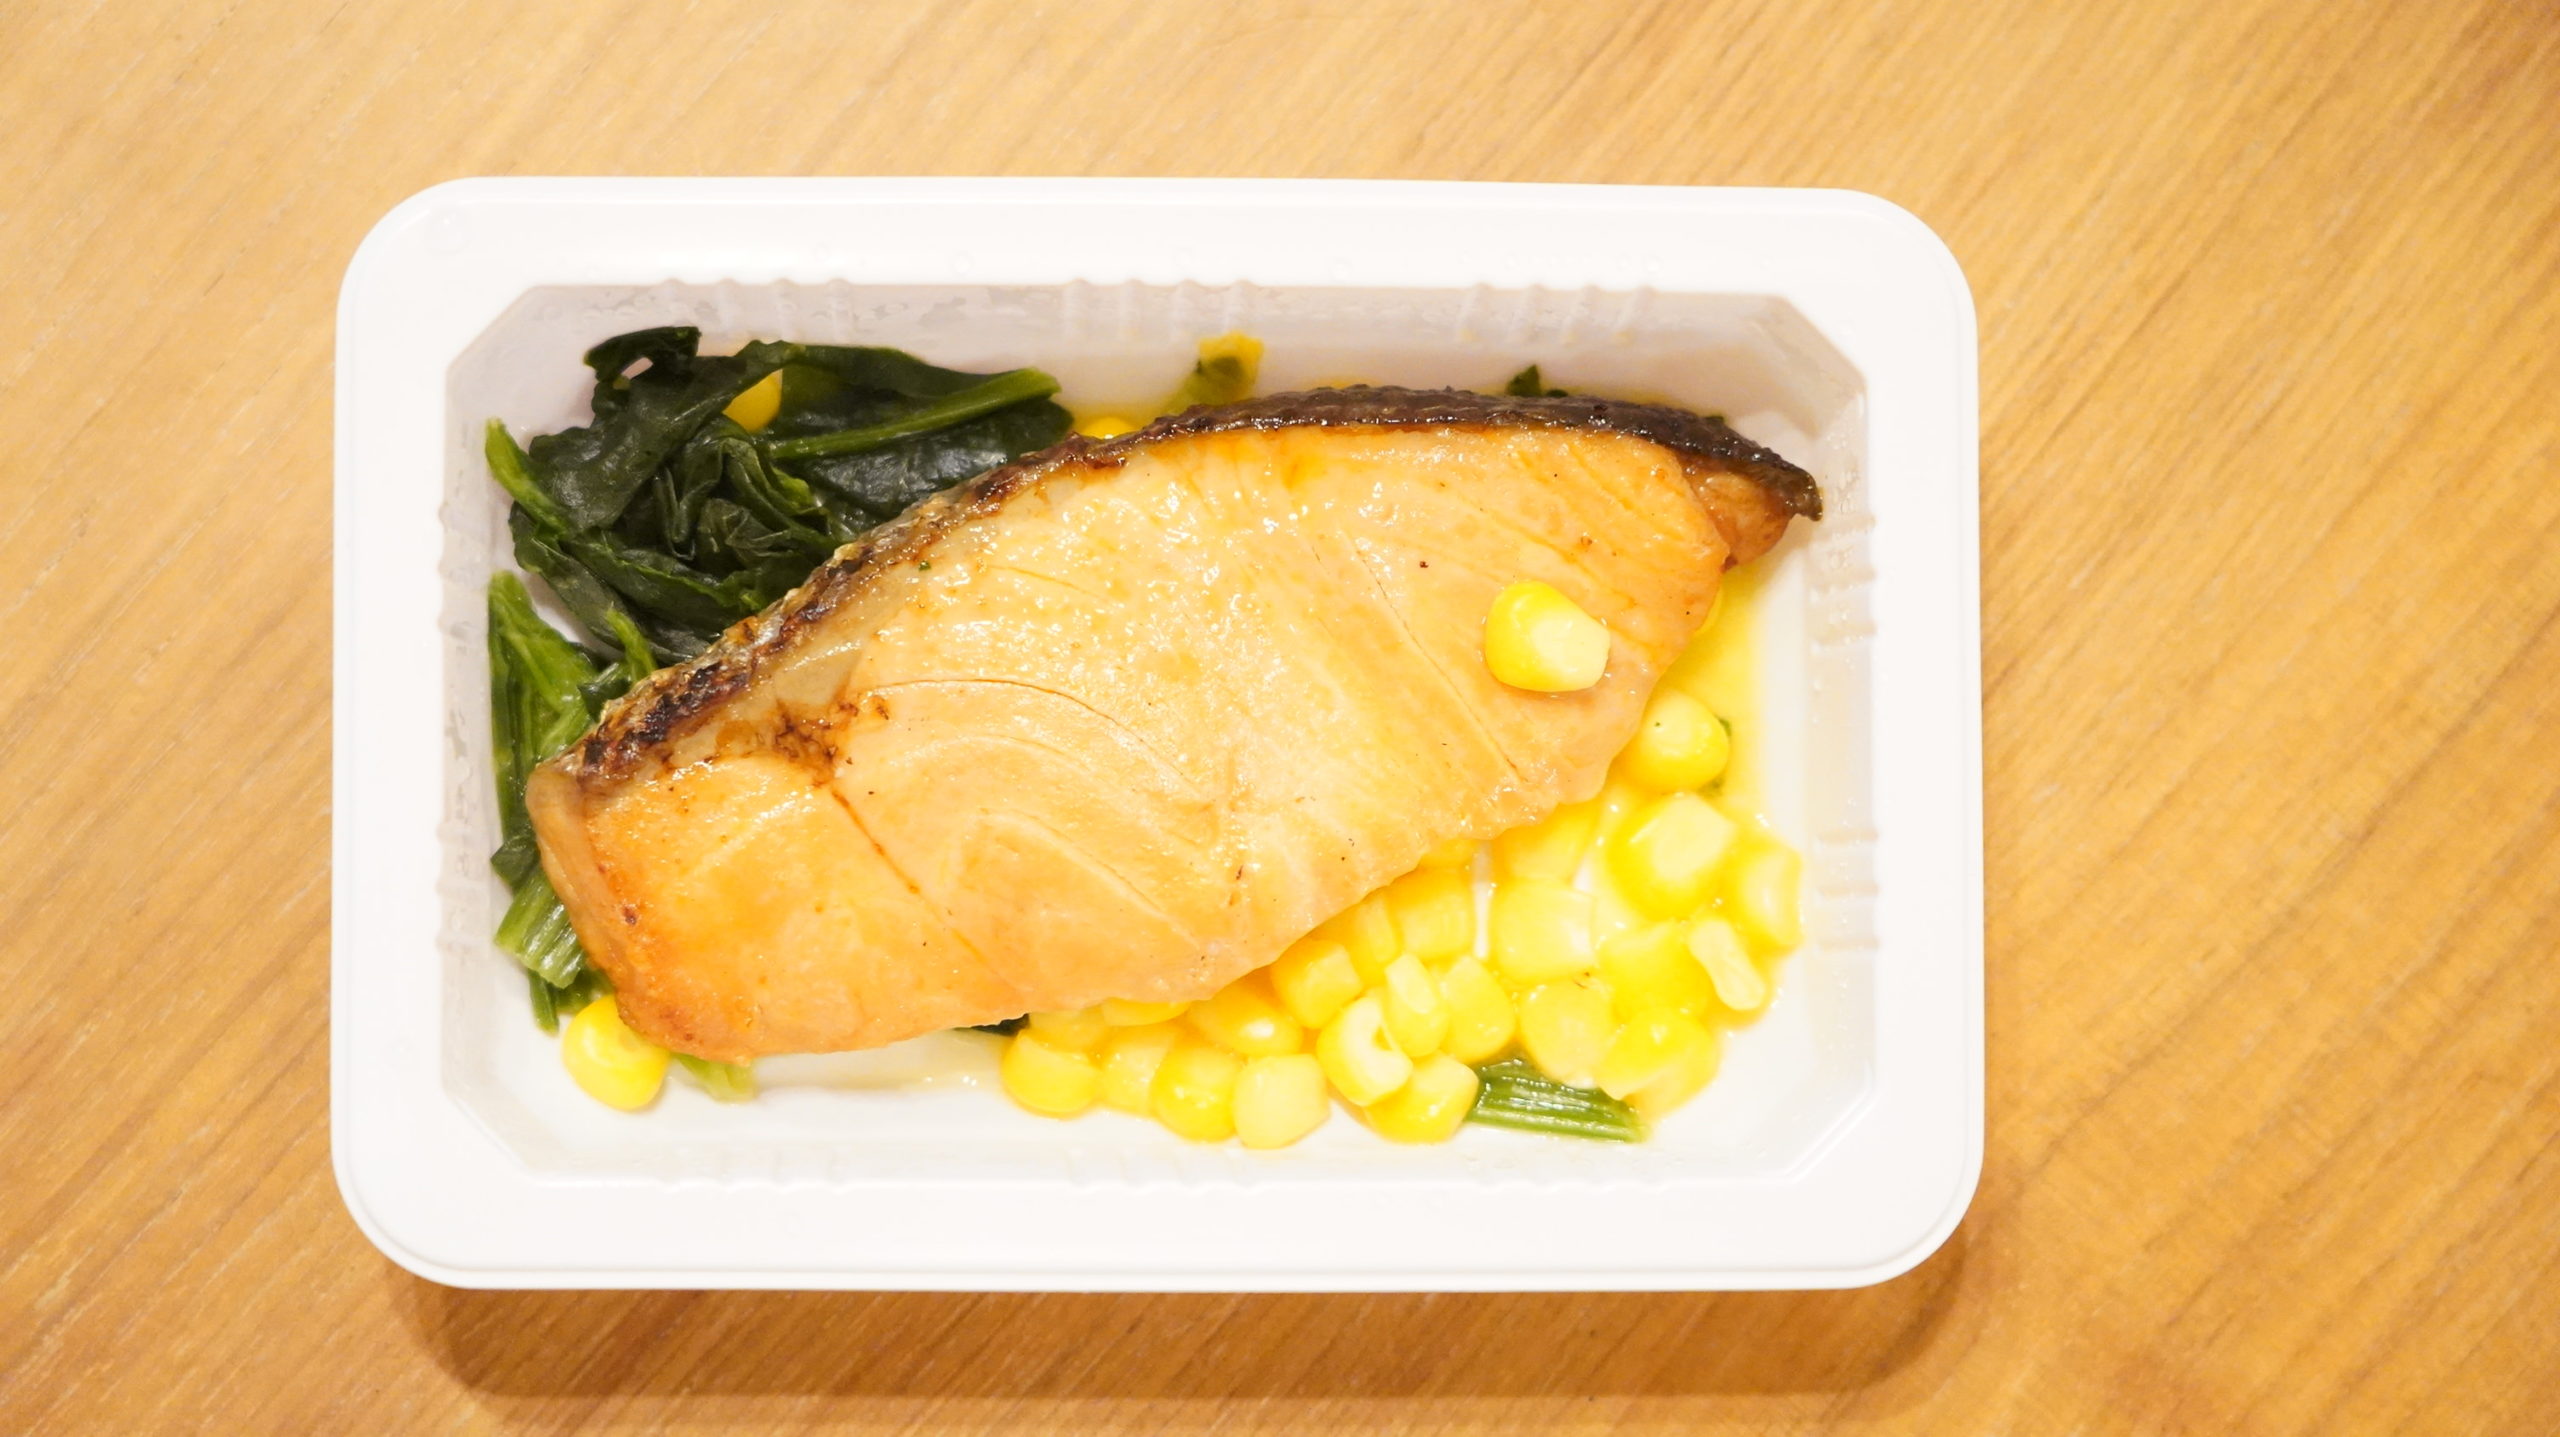 セブンイレブンの冷凍食品「バター香る銀鮭の醤油焼」の銀鮭、ほうれん草、コーンの写真